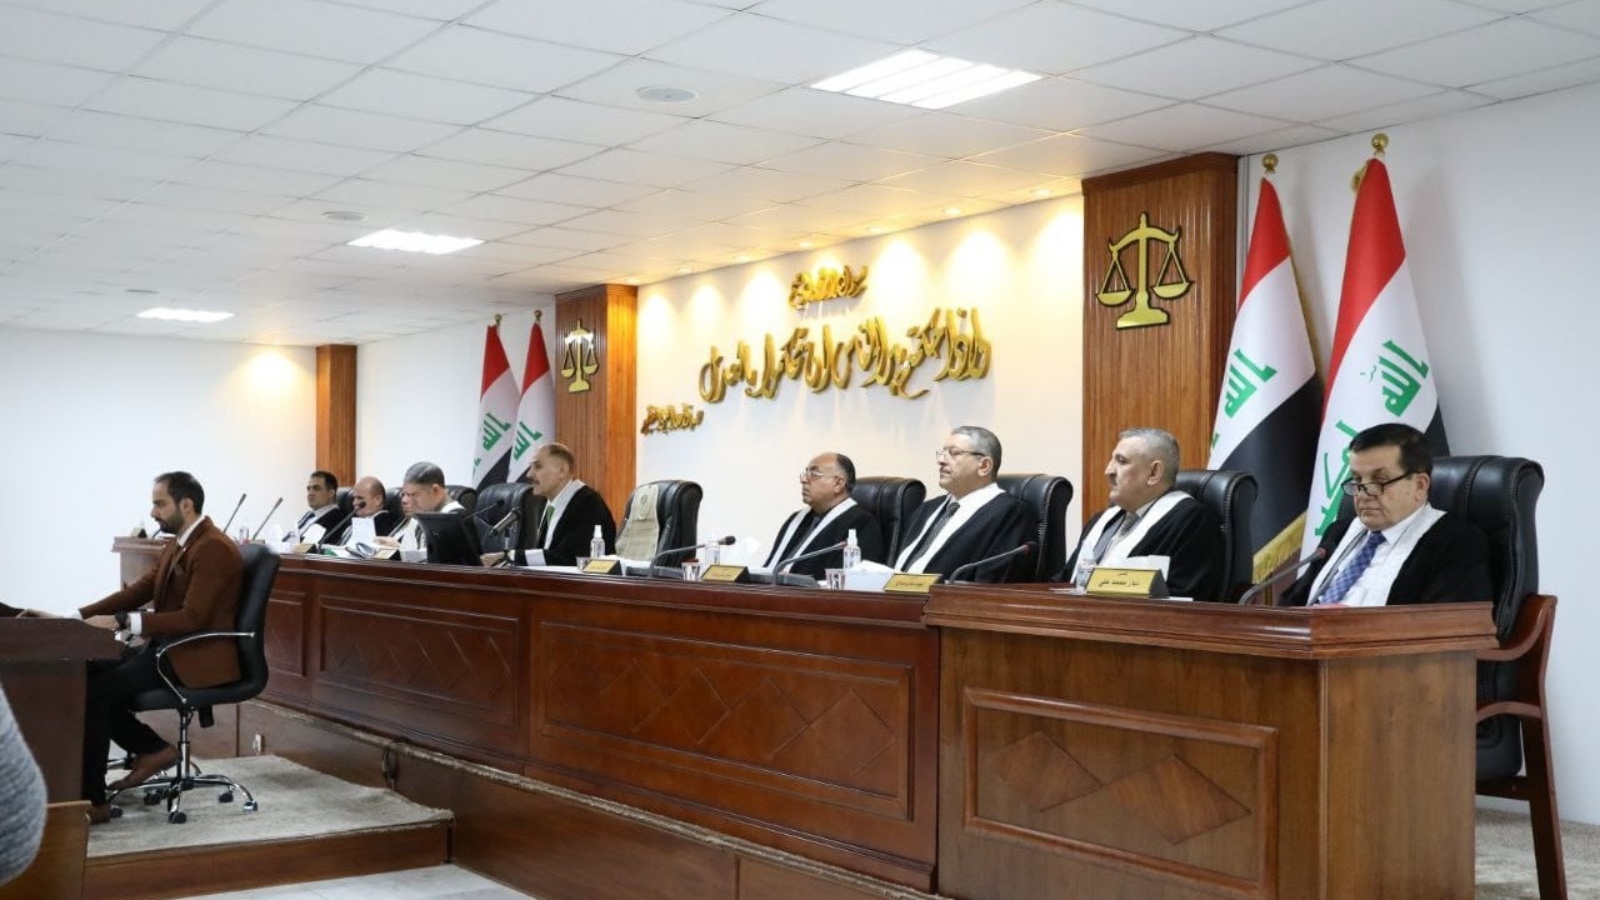 المحكمة الاتحادية العراقية العليا أجّلت الأربعاء 23 فبراير 2022 الحكم بالطعن في دستورية فتح البرلمان الترشح للرئاسة للمرة الثانية إلى الأول من الشهر المقبل (تويتر)